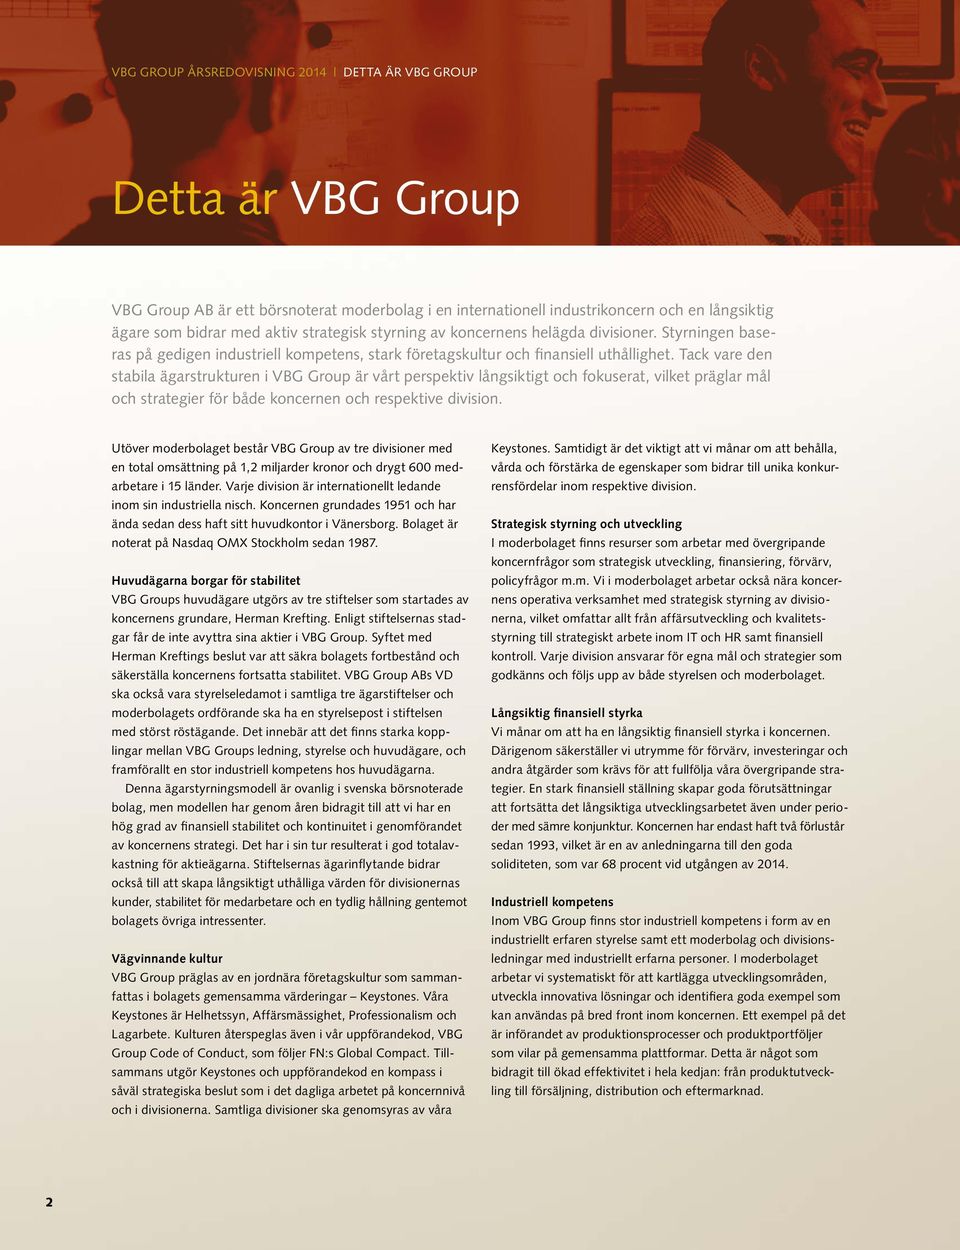 Tack vare den stabila ägarstrukturen i VBG Group är vårt perspektiv långsiktigt och fokuserat, vilket präglar mål och strategier för både koncernen och respektive division.